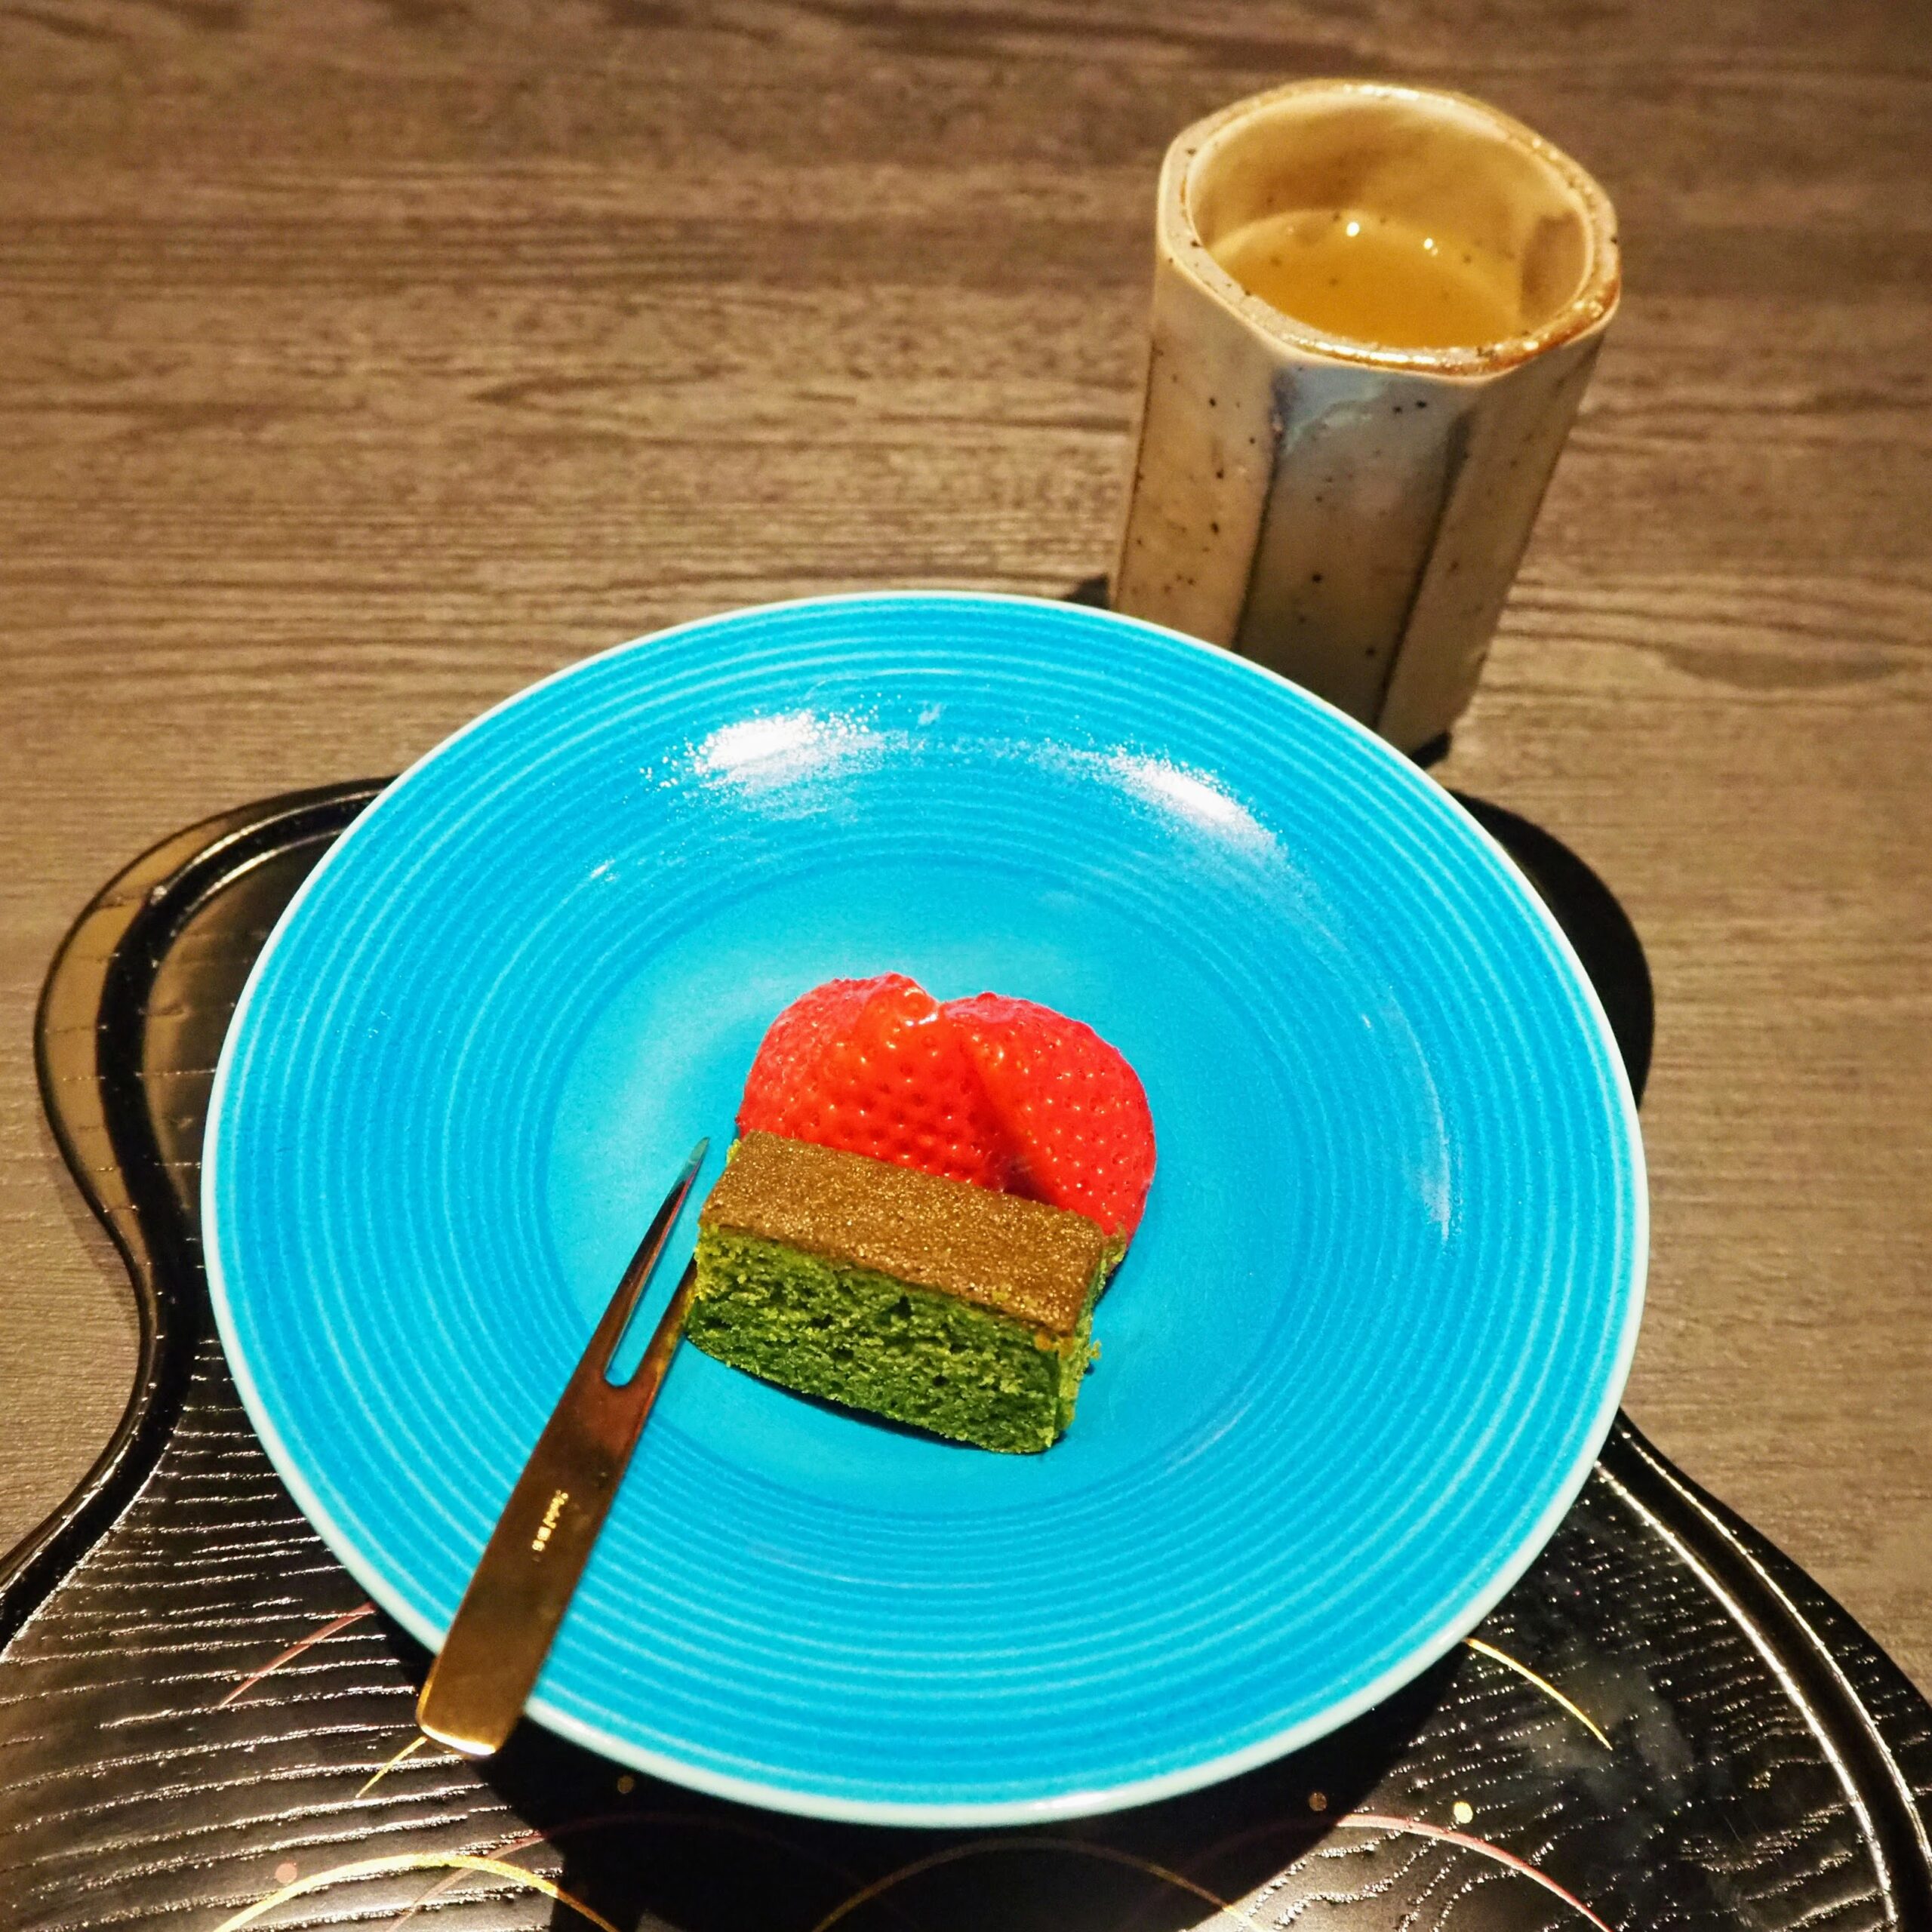 東京都港区 懐石 三田ばさら 別邸 季節懐石コース 甘味 抹茶のフィナンシェとあまおう